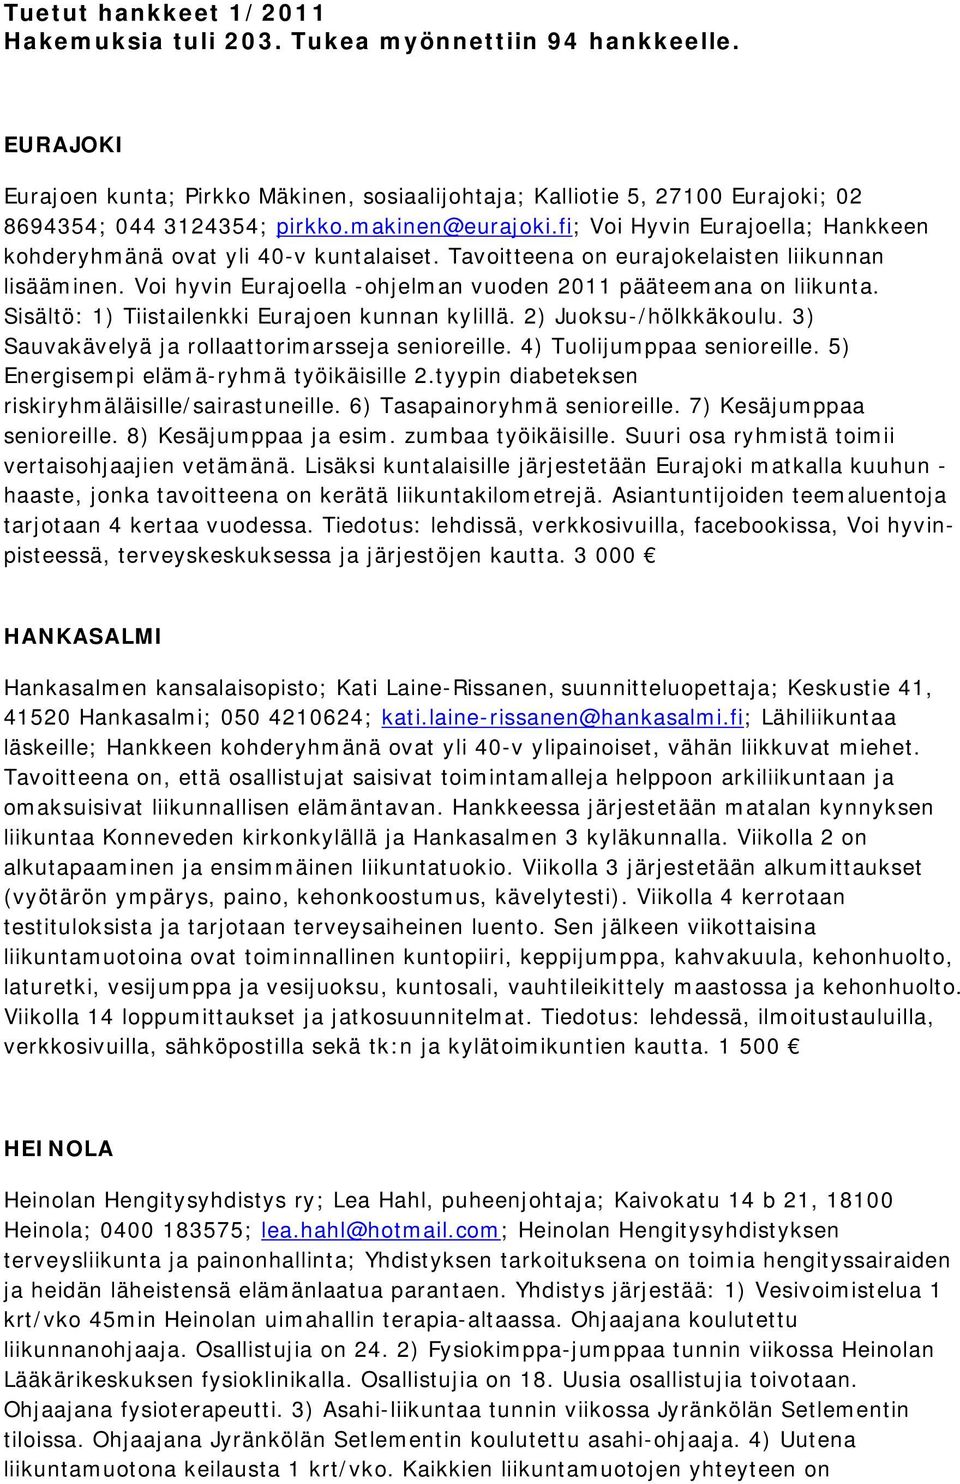 Voi hyvin Eurajoella -ohjelman vuoden 2011 pääteemana on liikunta. Sisältö: 1) Tiistailenkki Eurajoen kunnan kylillä. 2) Juoksu-/hölkkäkoulu. 3) Sauvakävelyä ja rollaattorimarsseja senioreille.